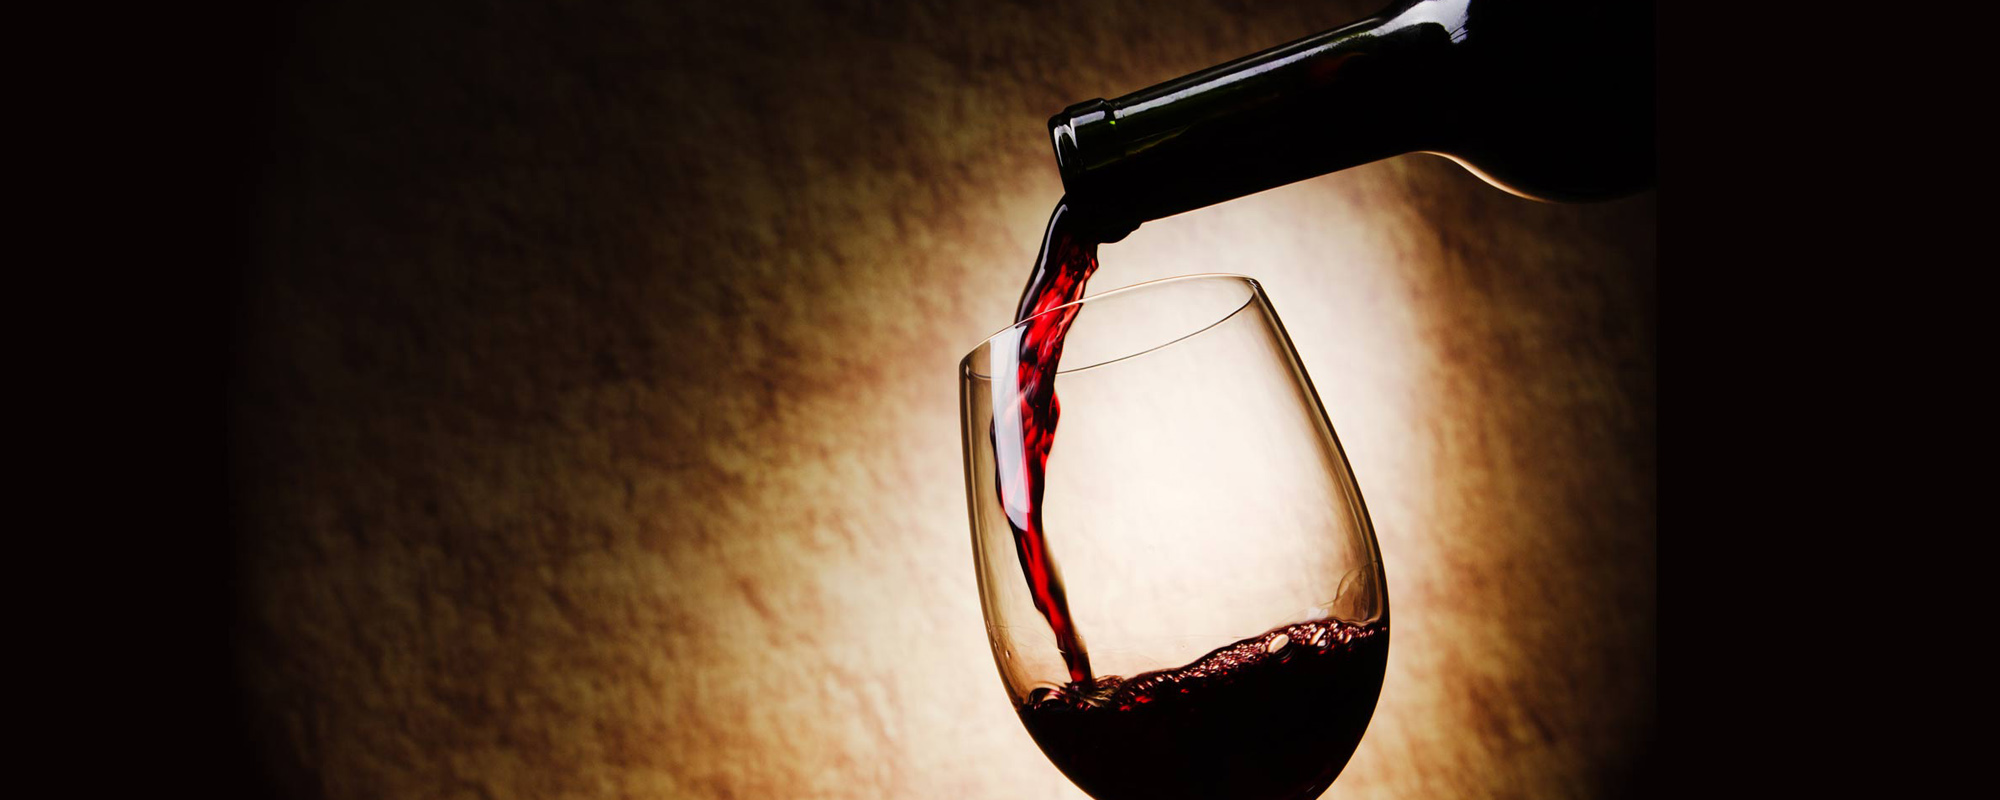 Le vin primeur: à tester absolument